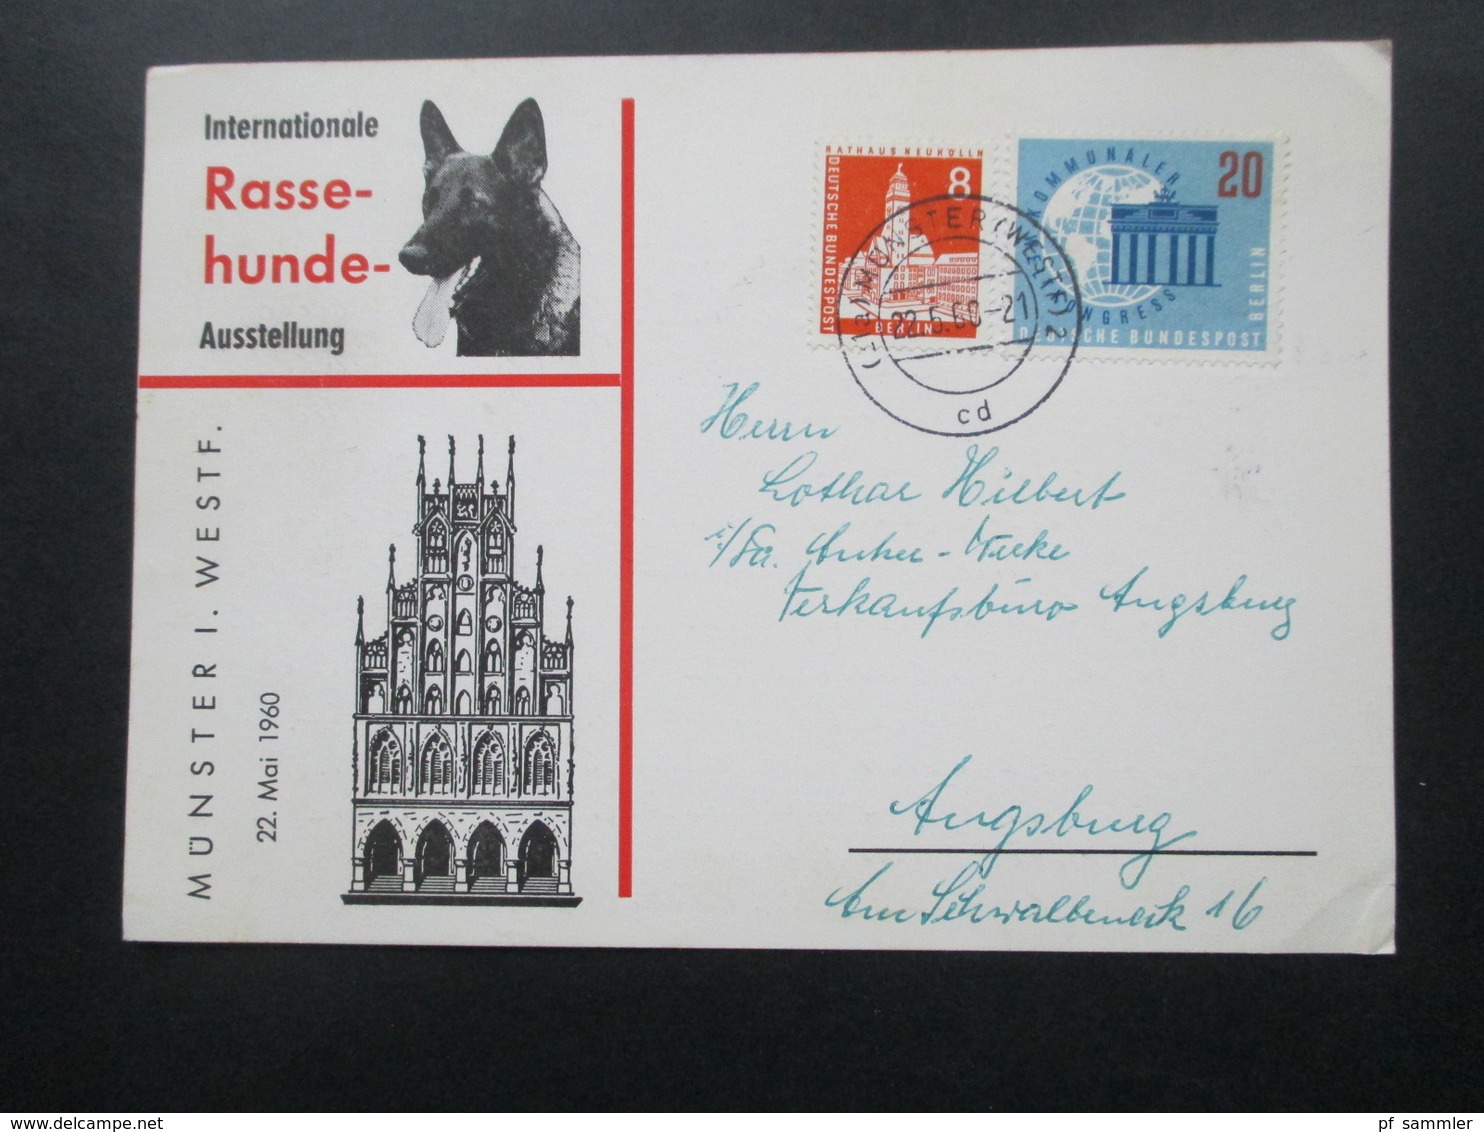 Sonderkarte Internationale Rasse Hunde Ausstellung Münster Westfalen Mit Berlin Marken! Nach Ausgburg Gesendet / Bedarf - Cartas & Documentos